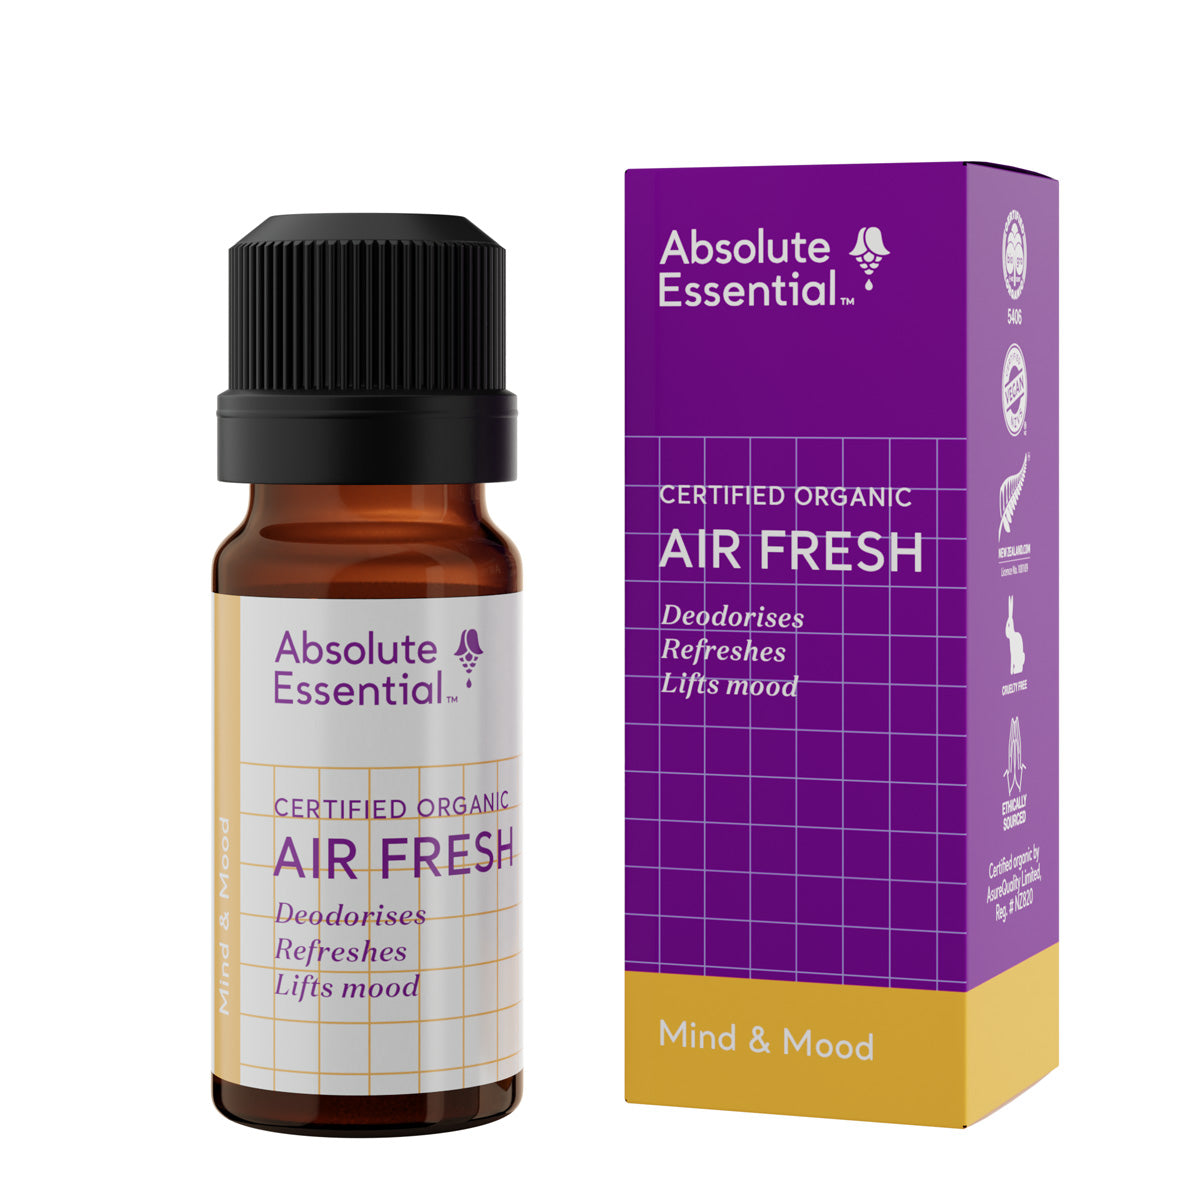 Absolute Essential - Air fresh